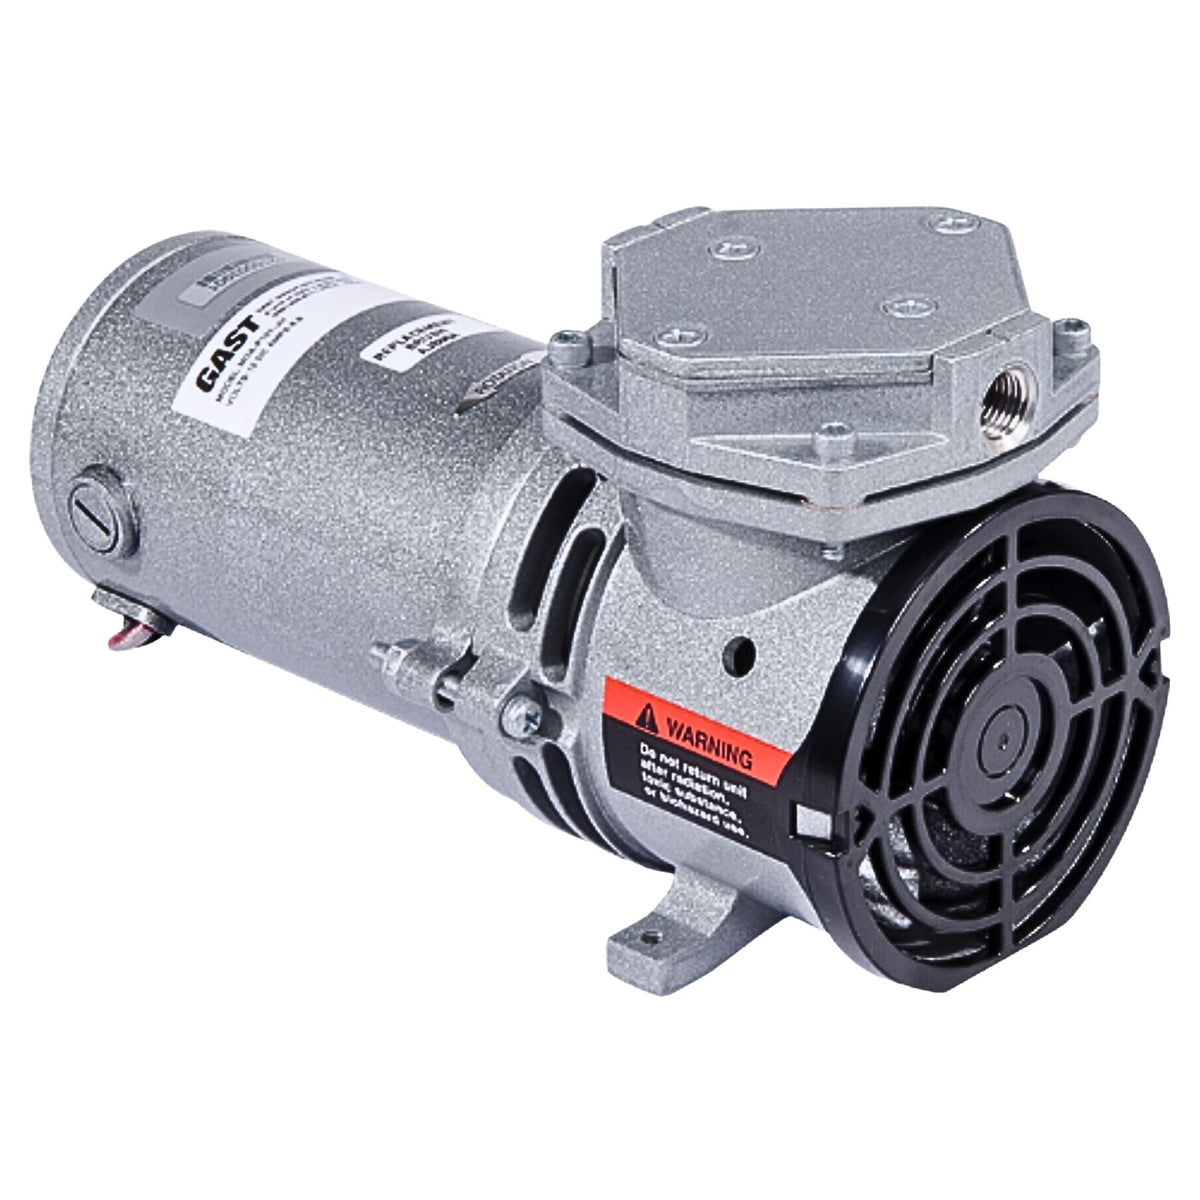 Gast | 12VDC- Vacuum Pump | MOA-V111-JH used on gast product line